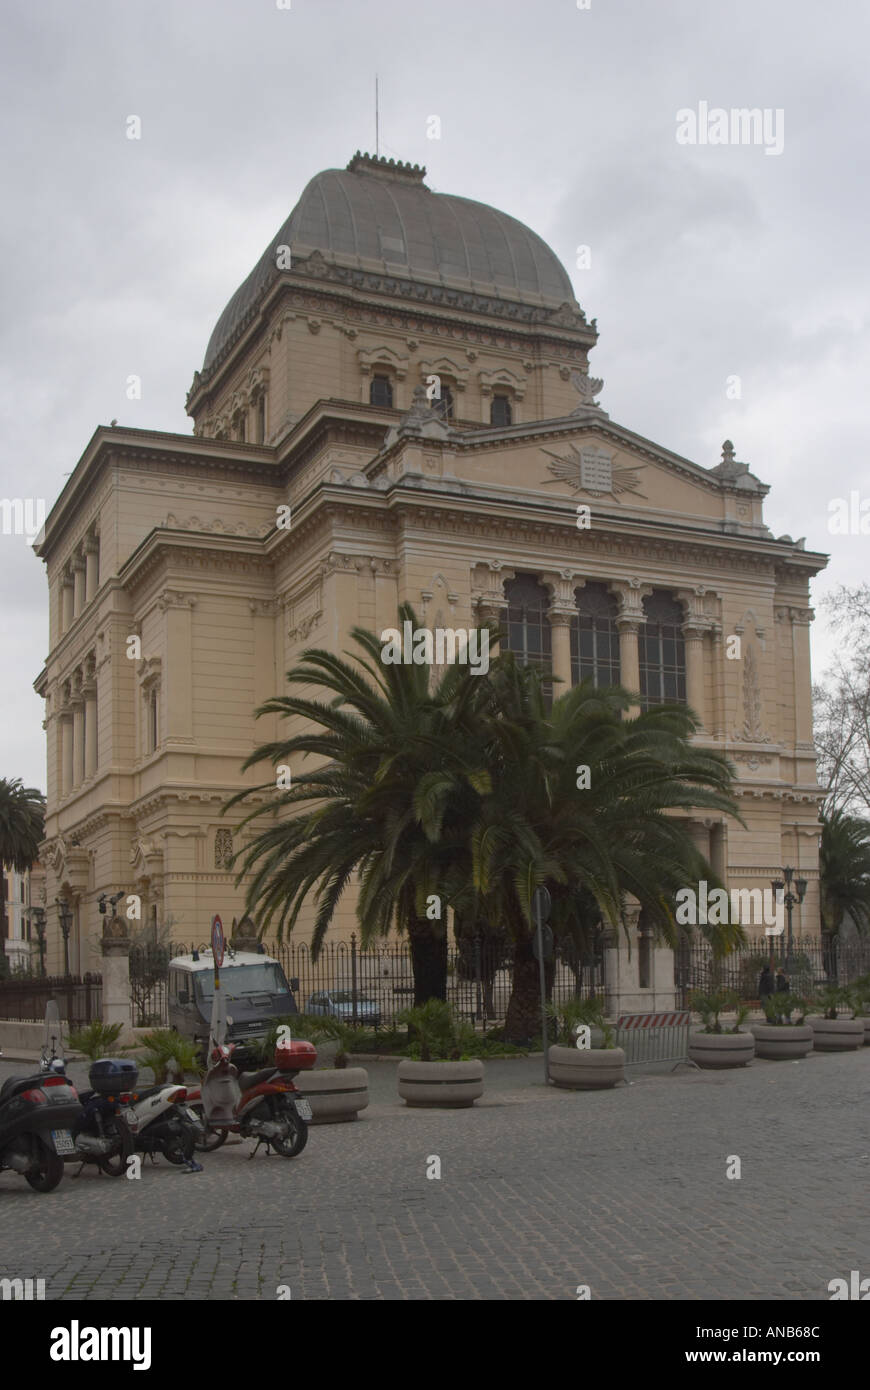 La sinagoga en el ghetto. Esta es la más grande de las sinagogas de Roma y se asienta en lo que fue una cuarta parte del antiguo ghetto judío. La sinagoga también contiene un museo de la cultura judía, el museo ebraico di Roma. Foto de stock